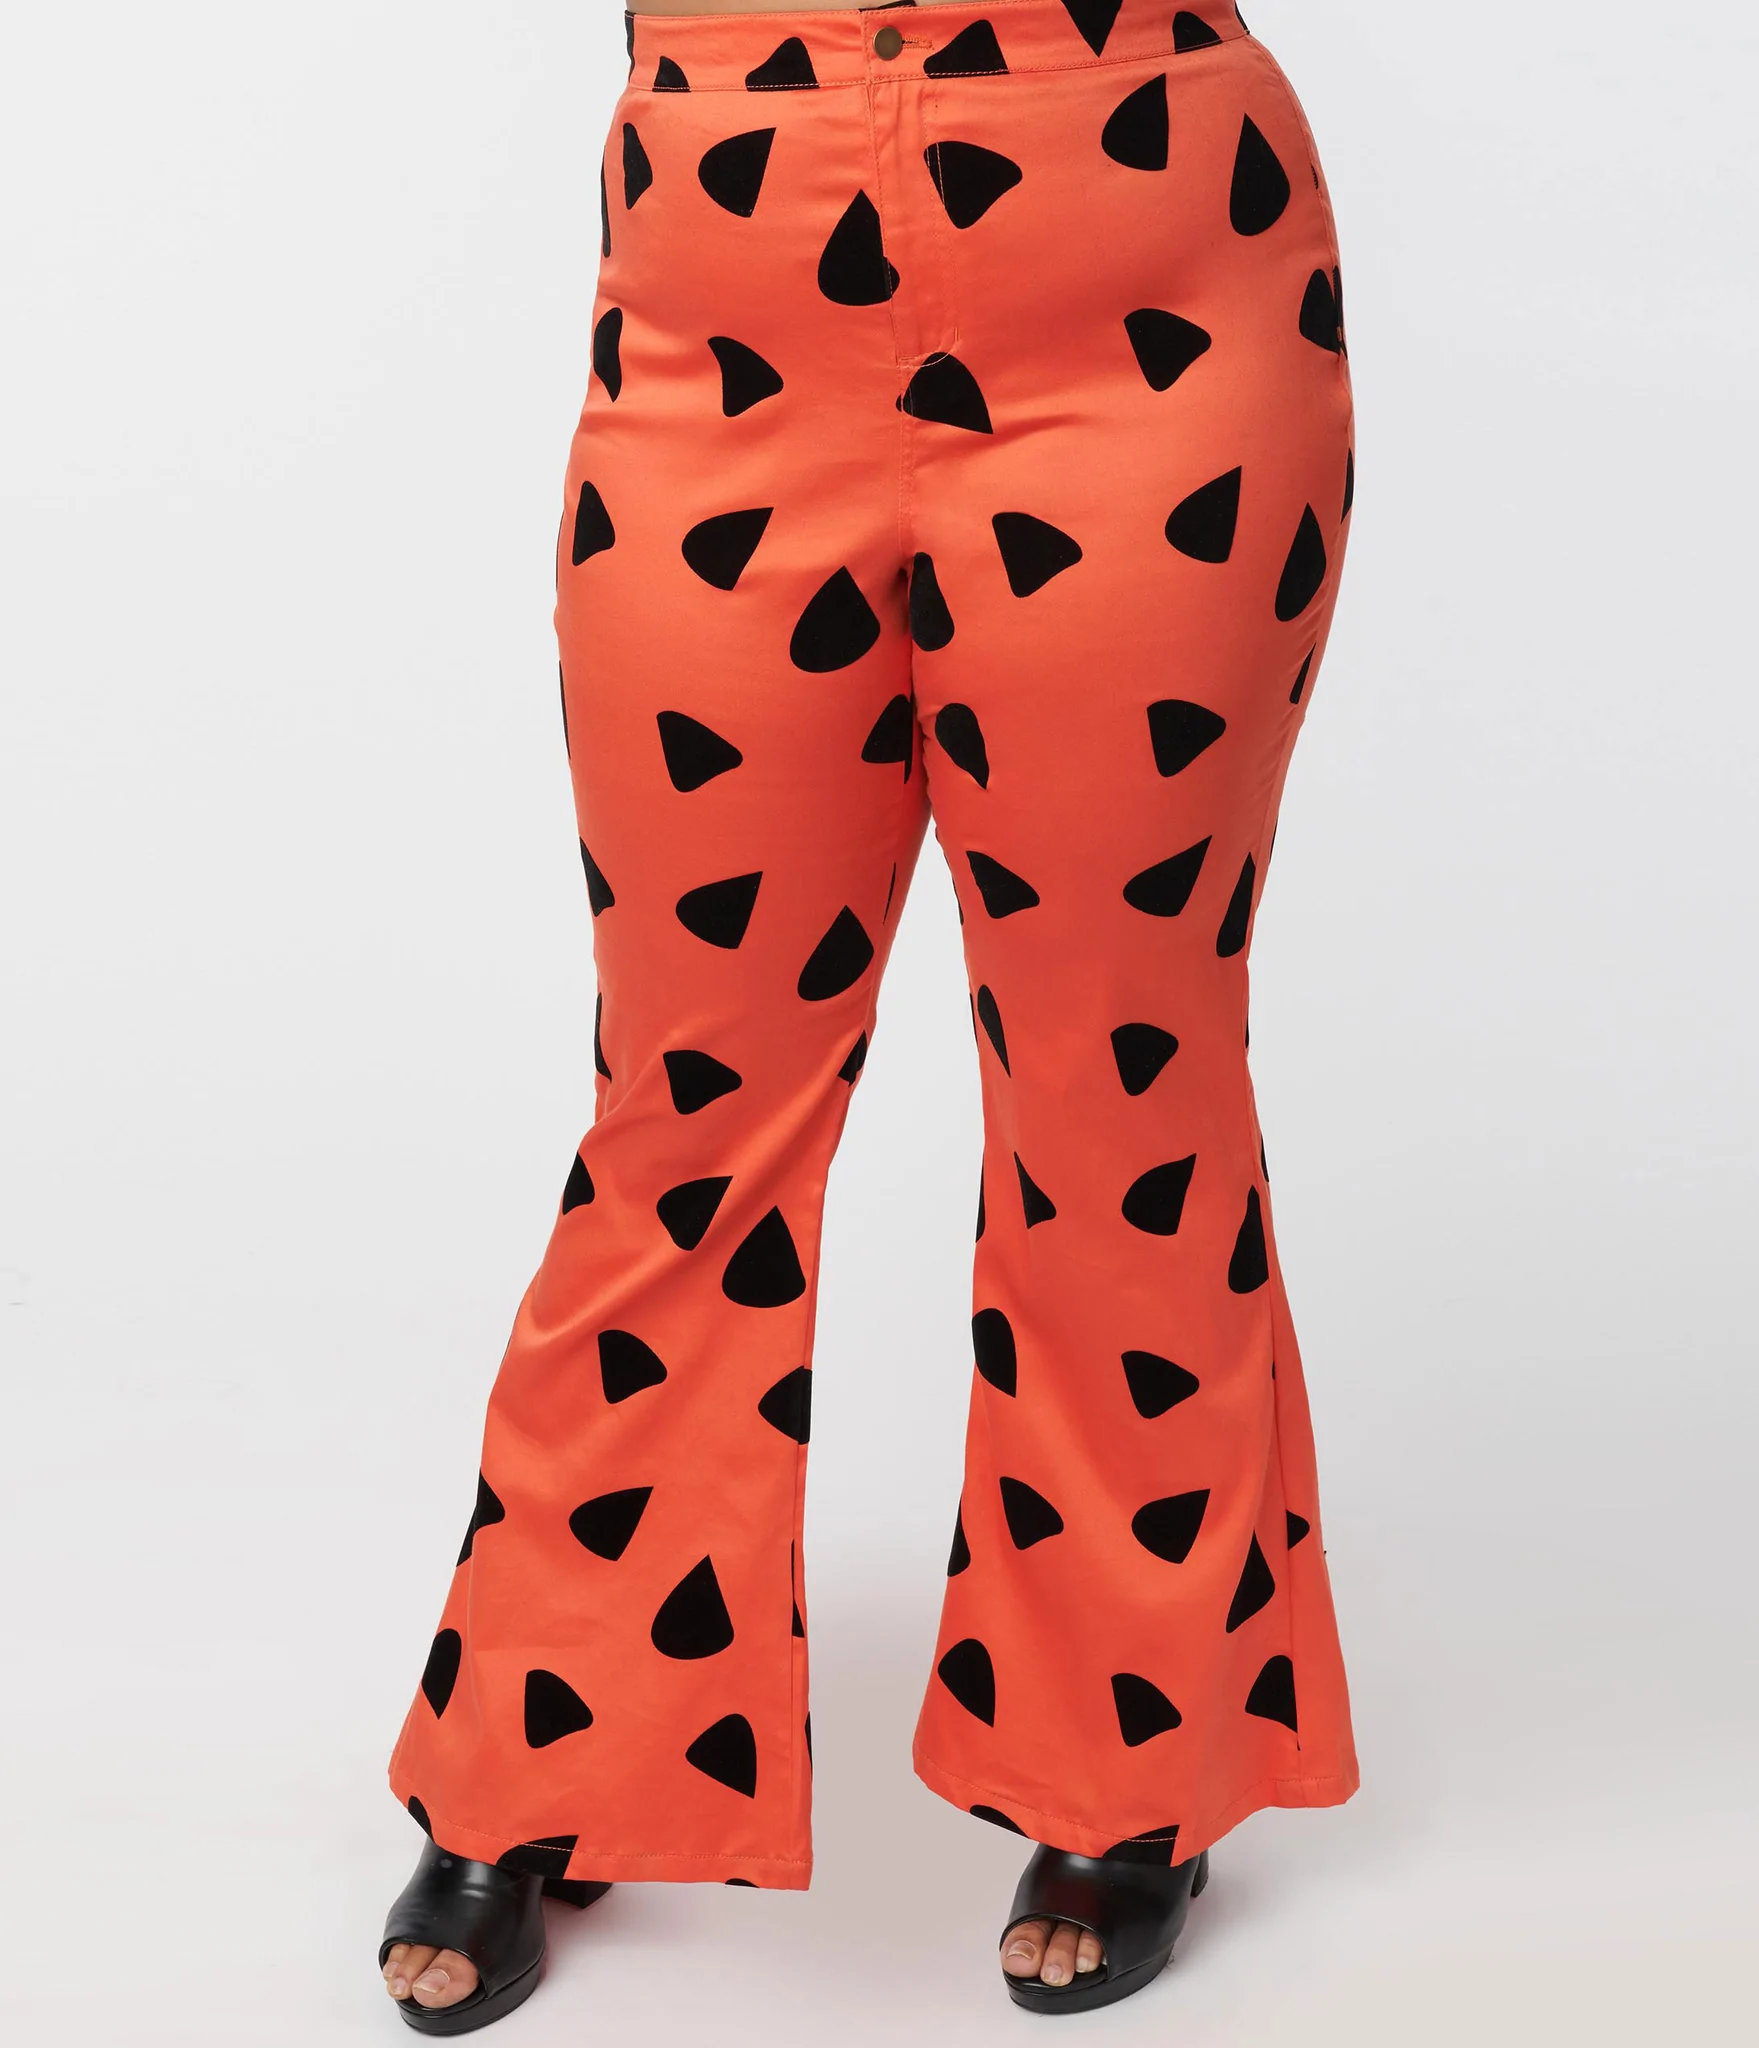 Smak Parlour Flintstones Orange Black Leopard Spots Print Flare Pants unique vintage lana rose